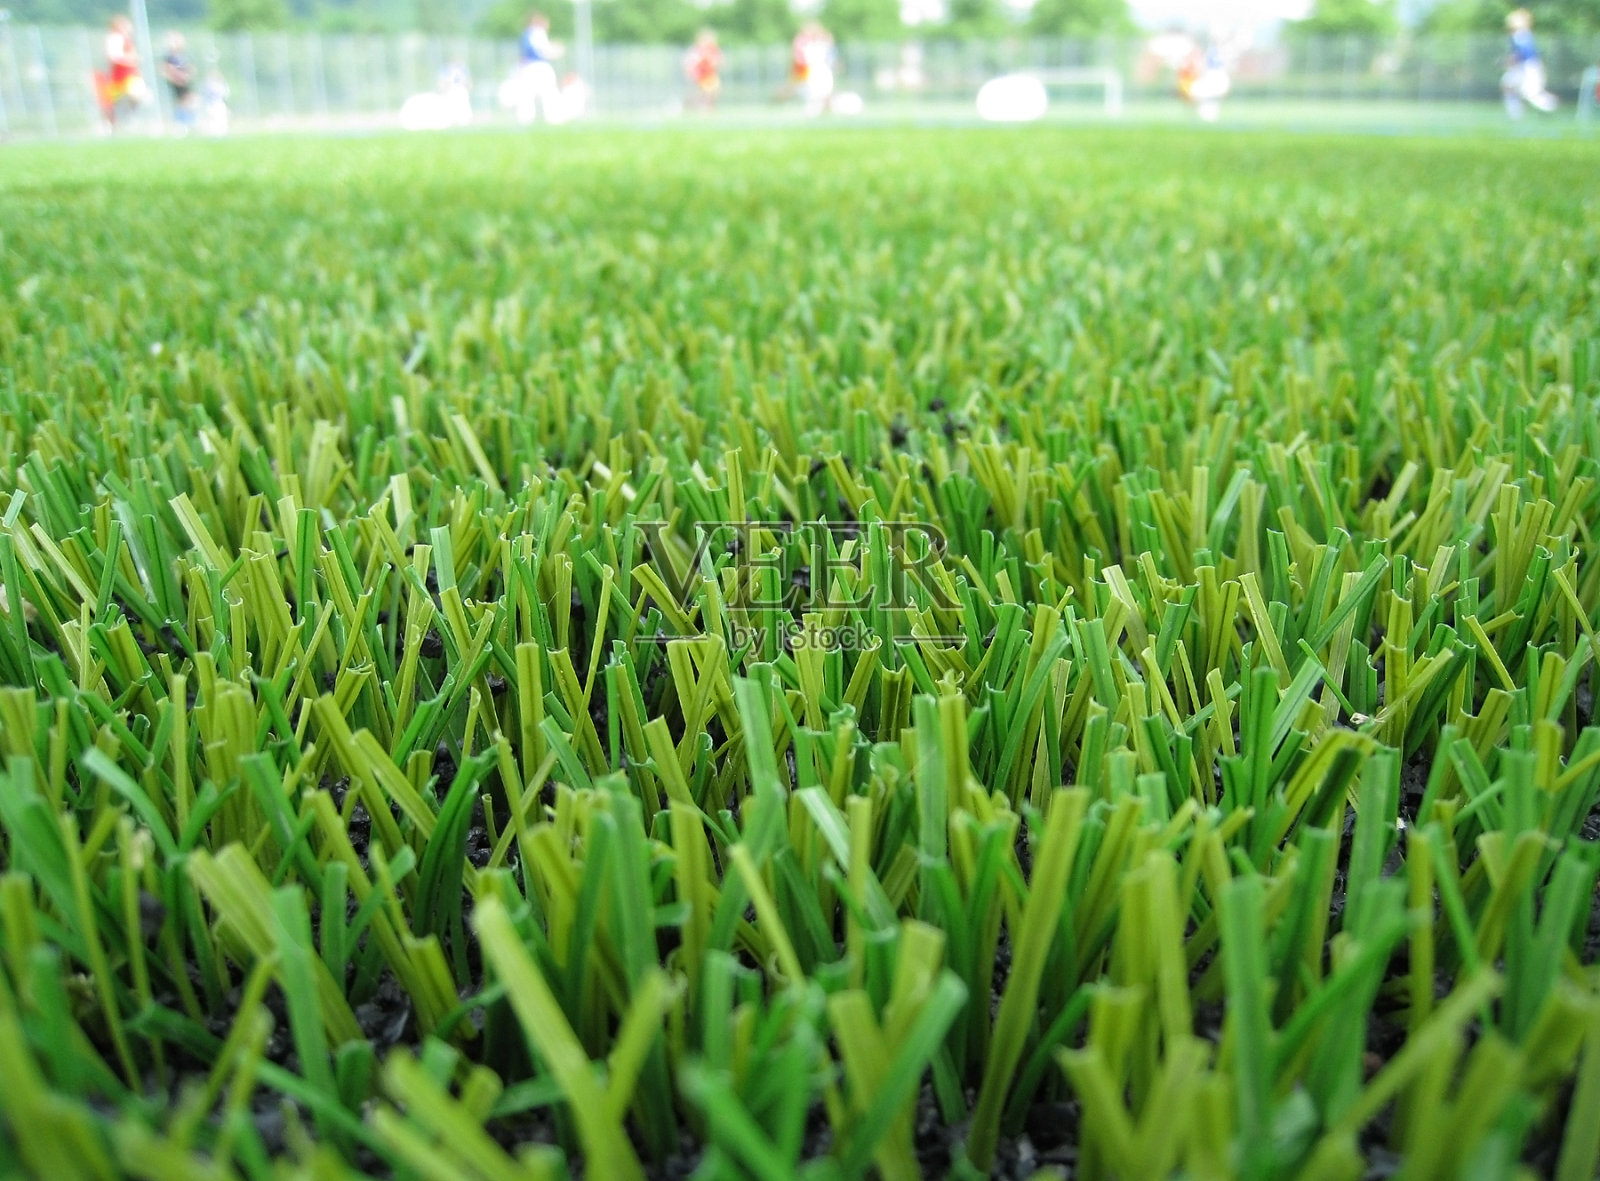 用人造草制成的足球场照片摄影图片